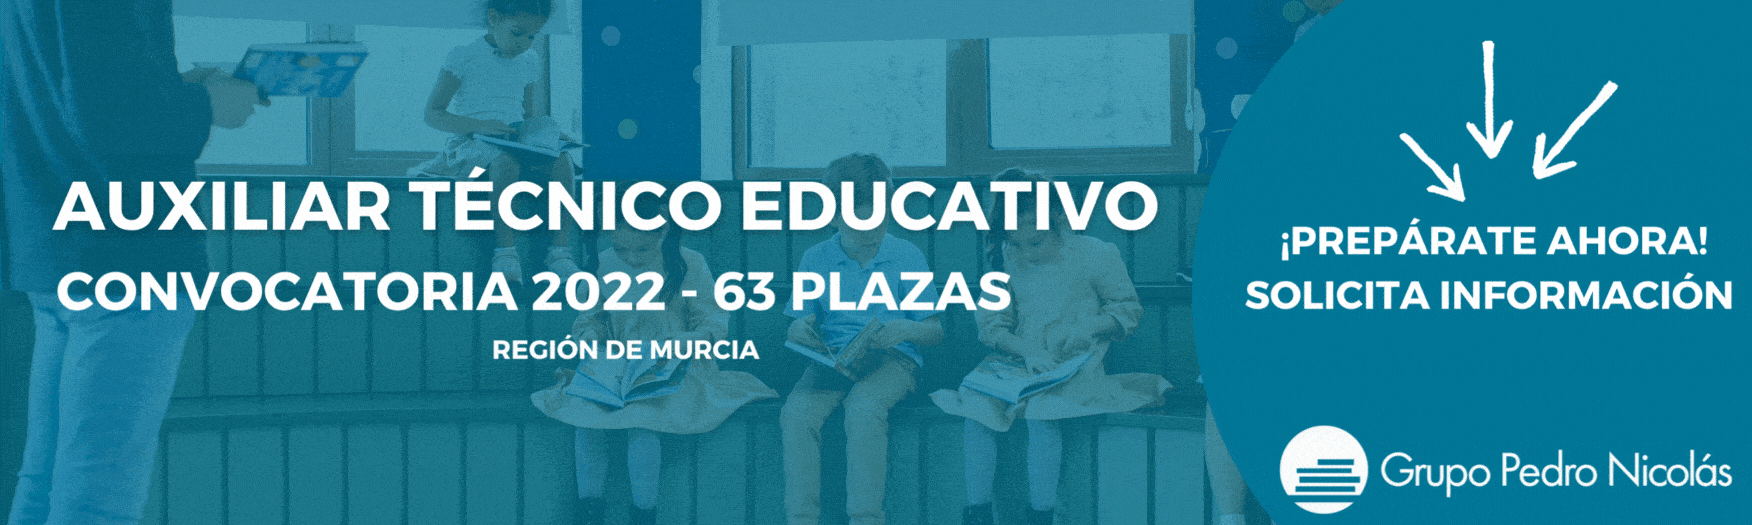 Convocatoria Auxiliar Técnico Educativo Murcia